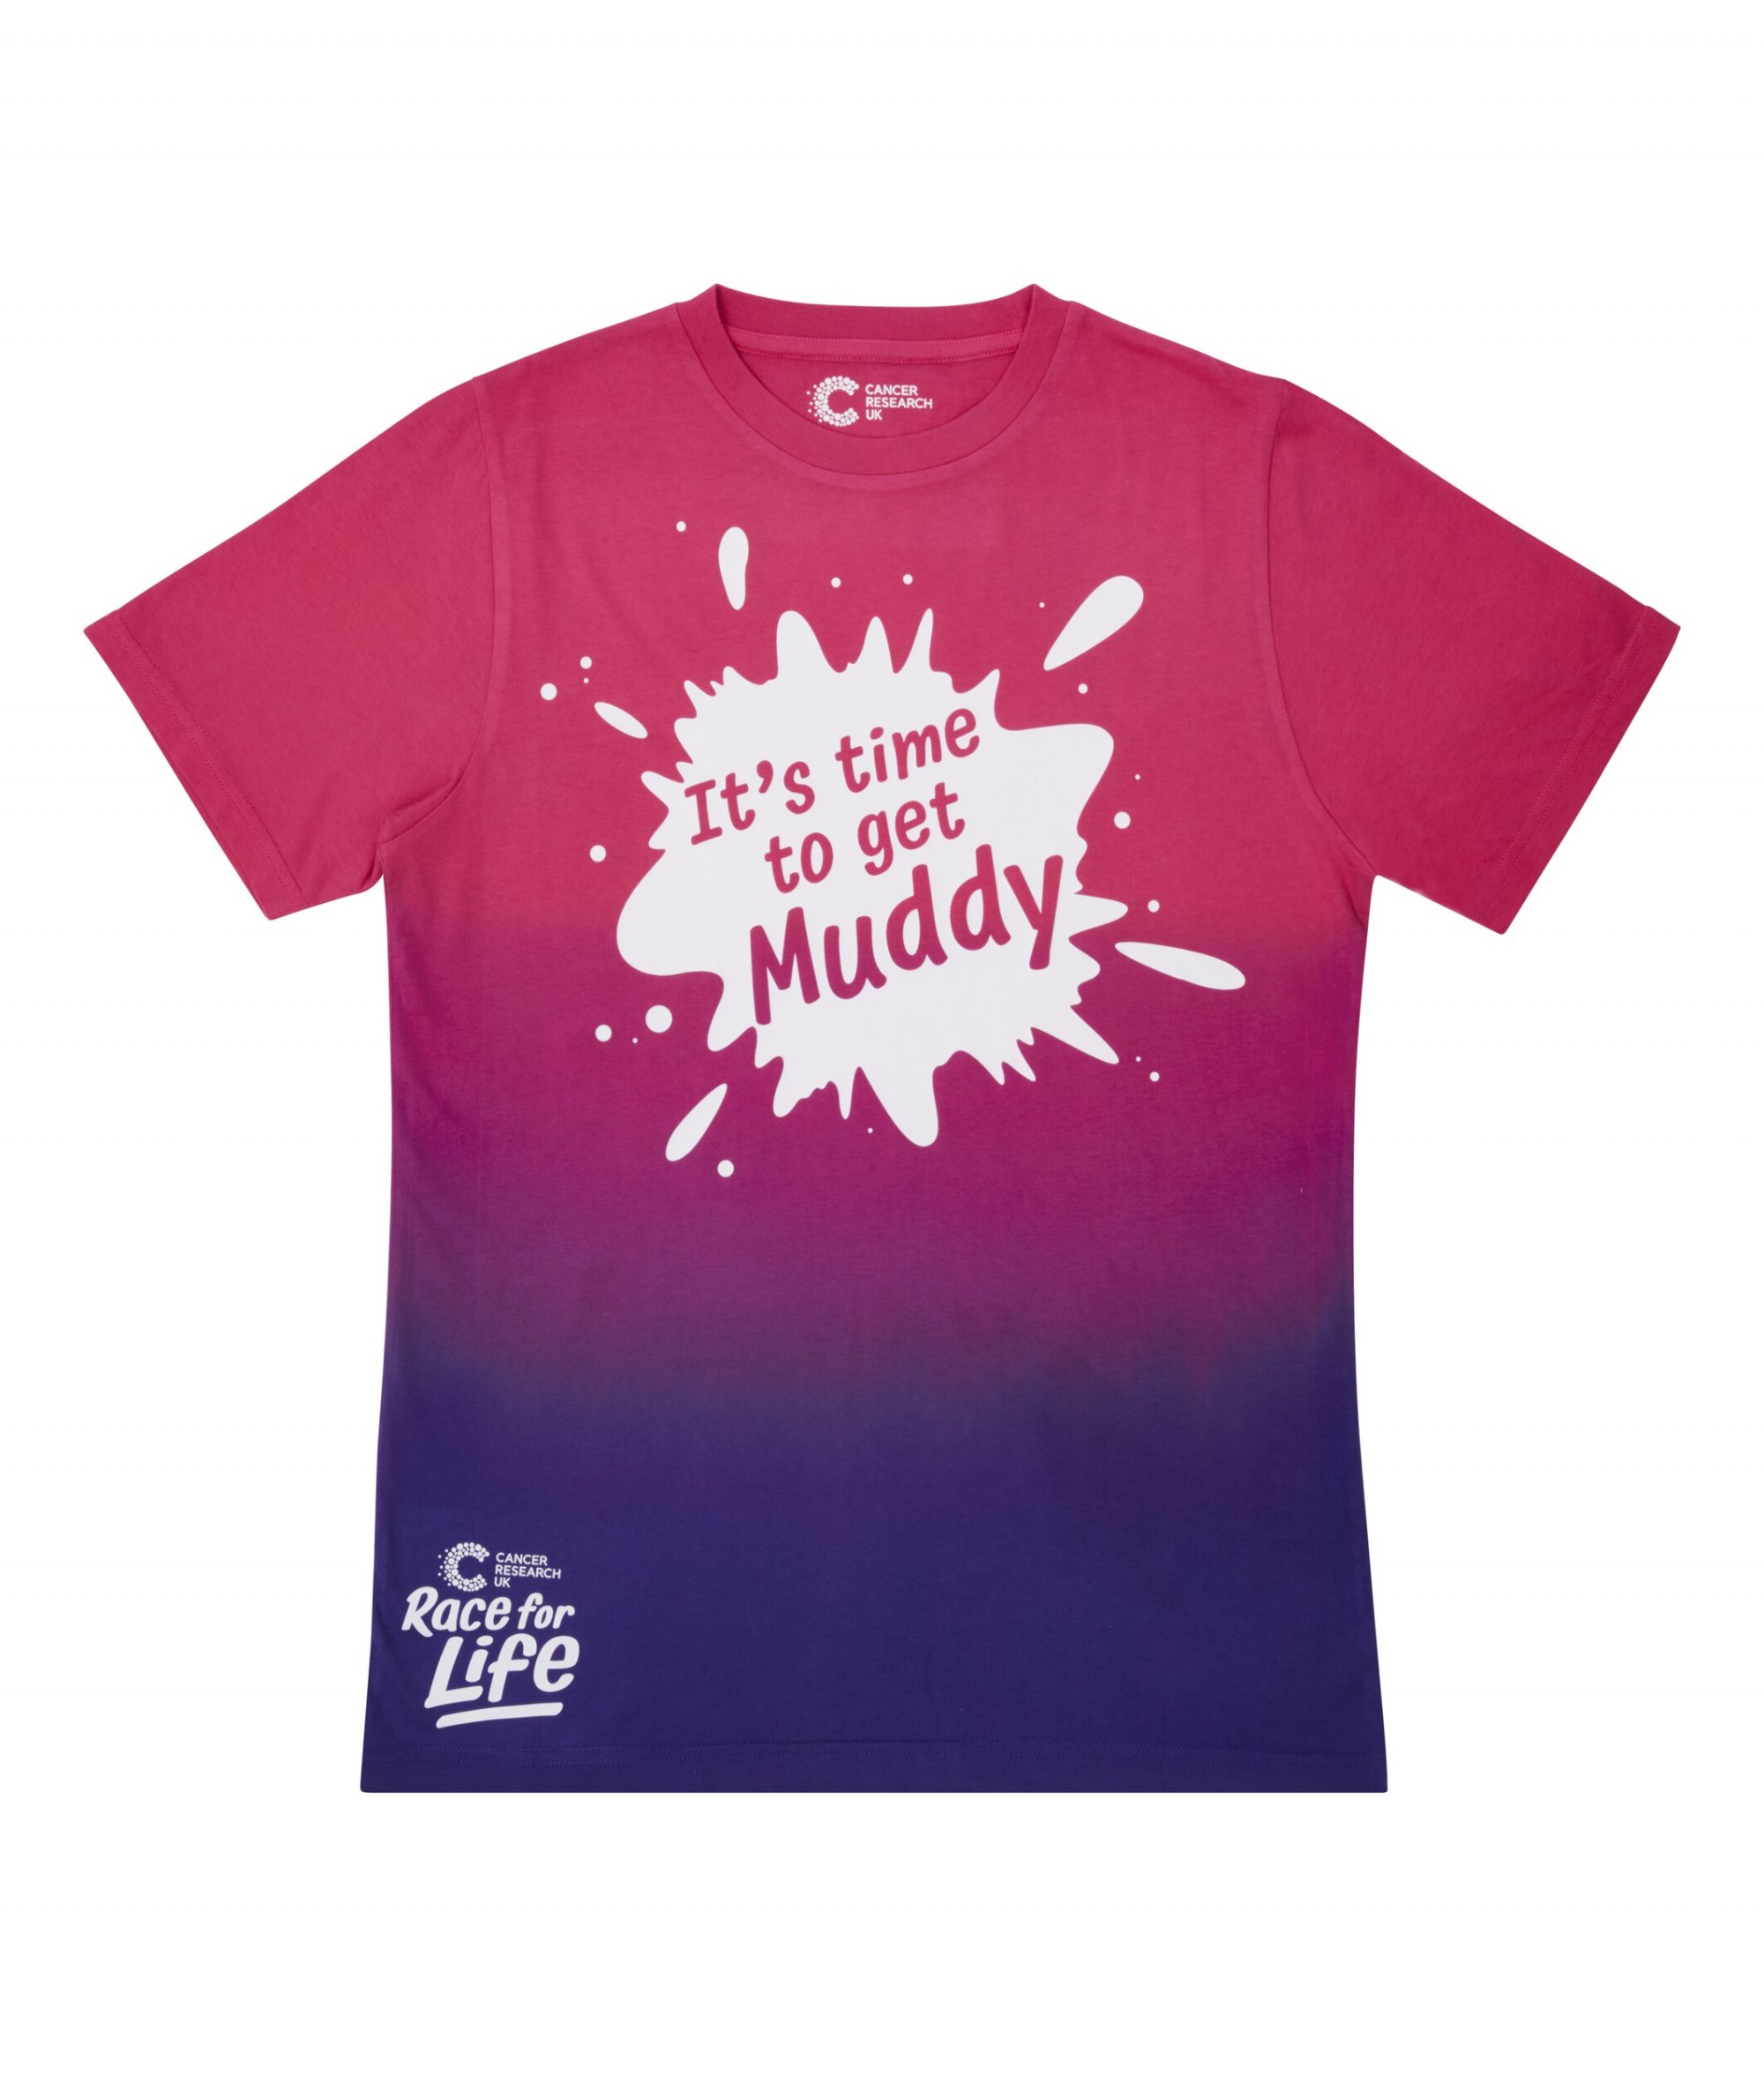 Men's T-Shirts, Shop Life Online